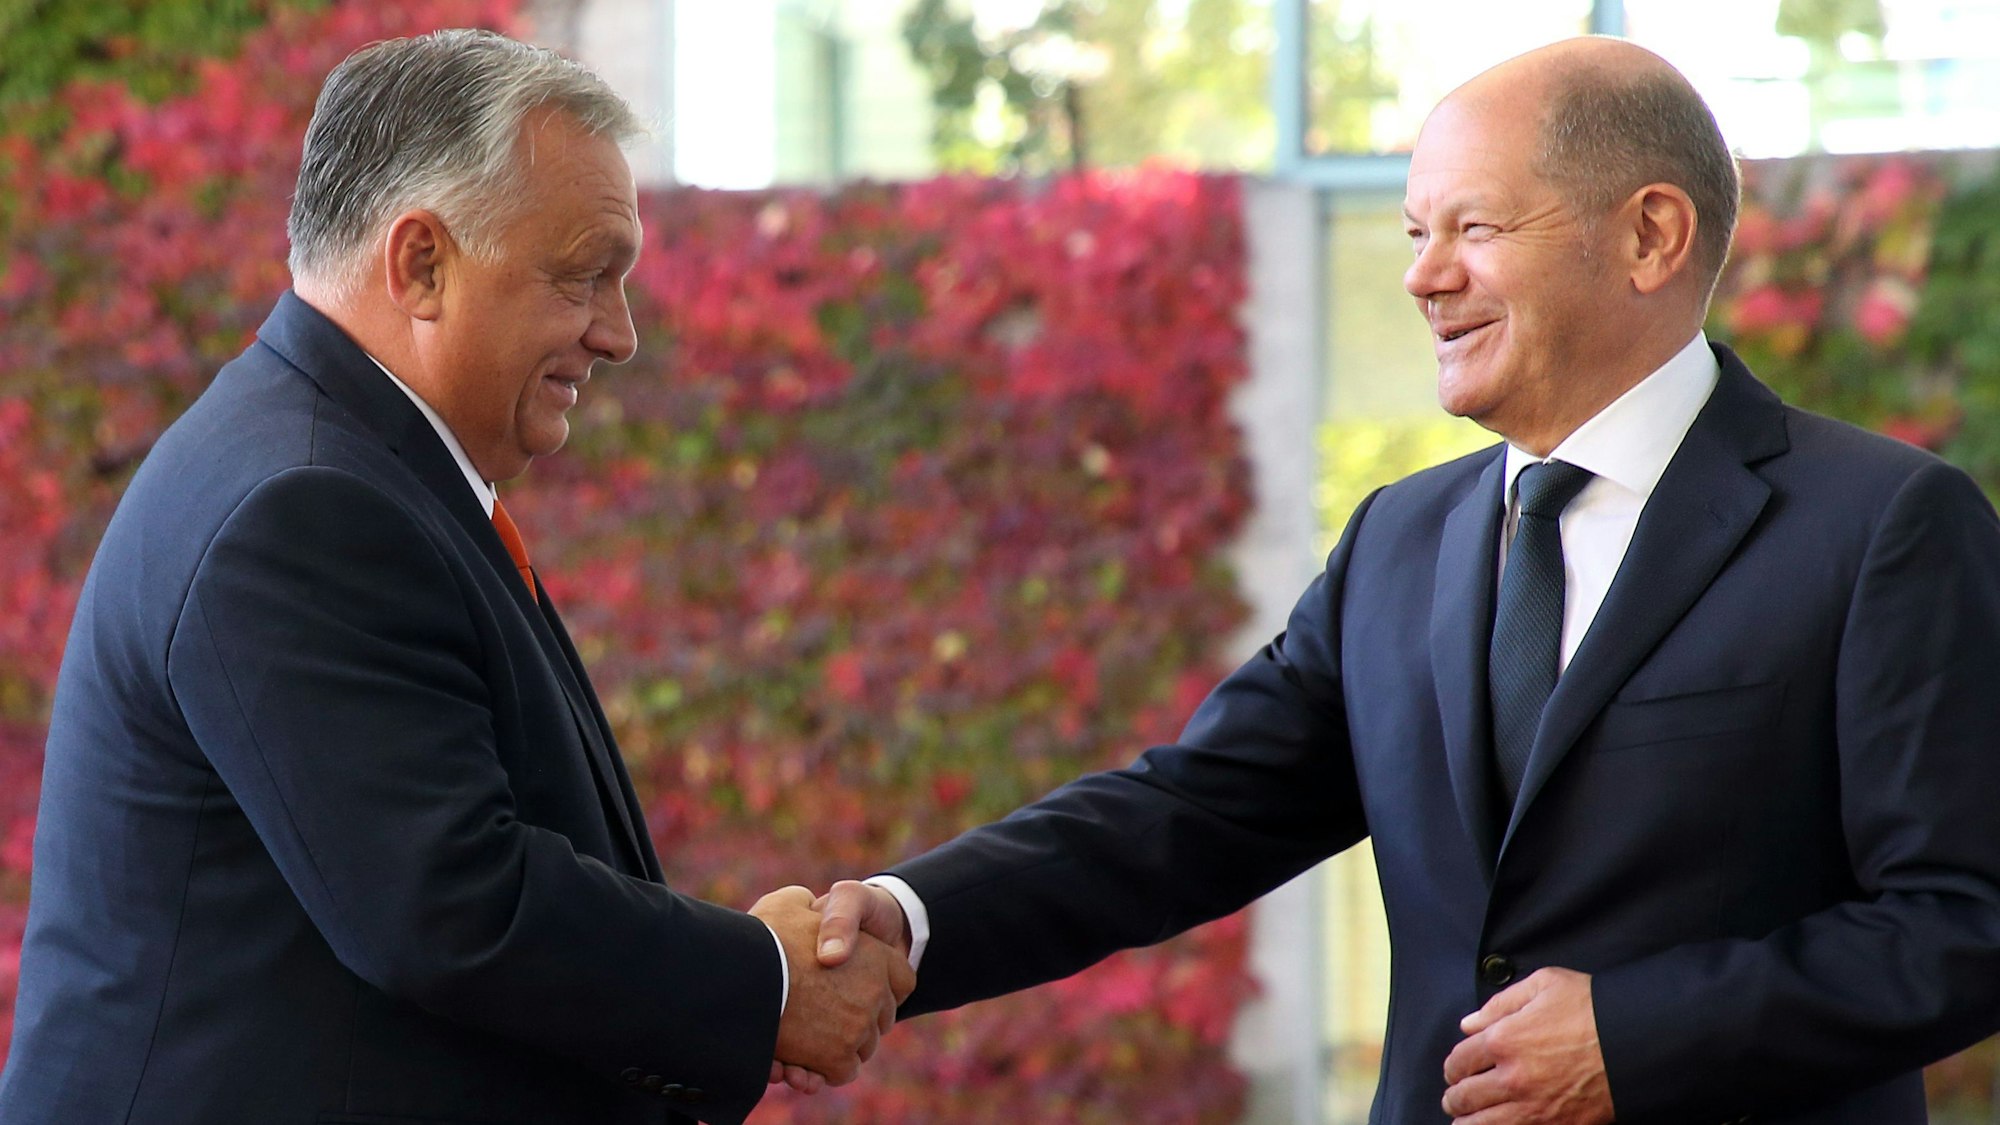 Bundeskanzler Olaf Scholz (r, SPD) empfängt vor dem Bundeskanzleramt Viktor Orban (l), ungarischer Ministerpräsident, der sich zu einem Besuch in der deutschen Hauptstadt aufhält.